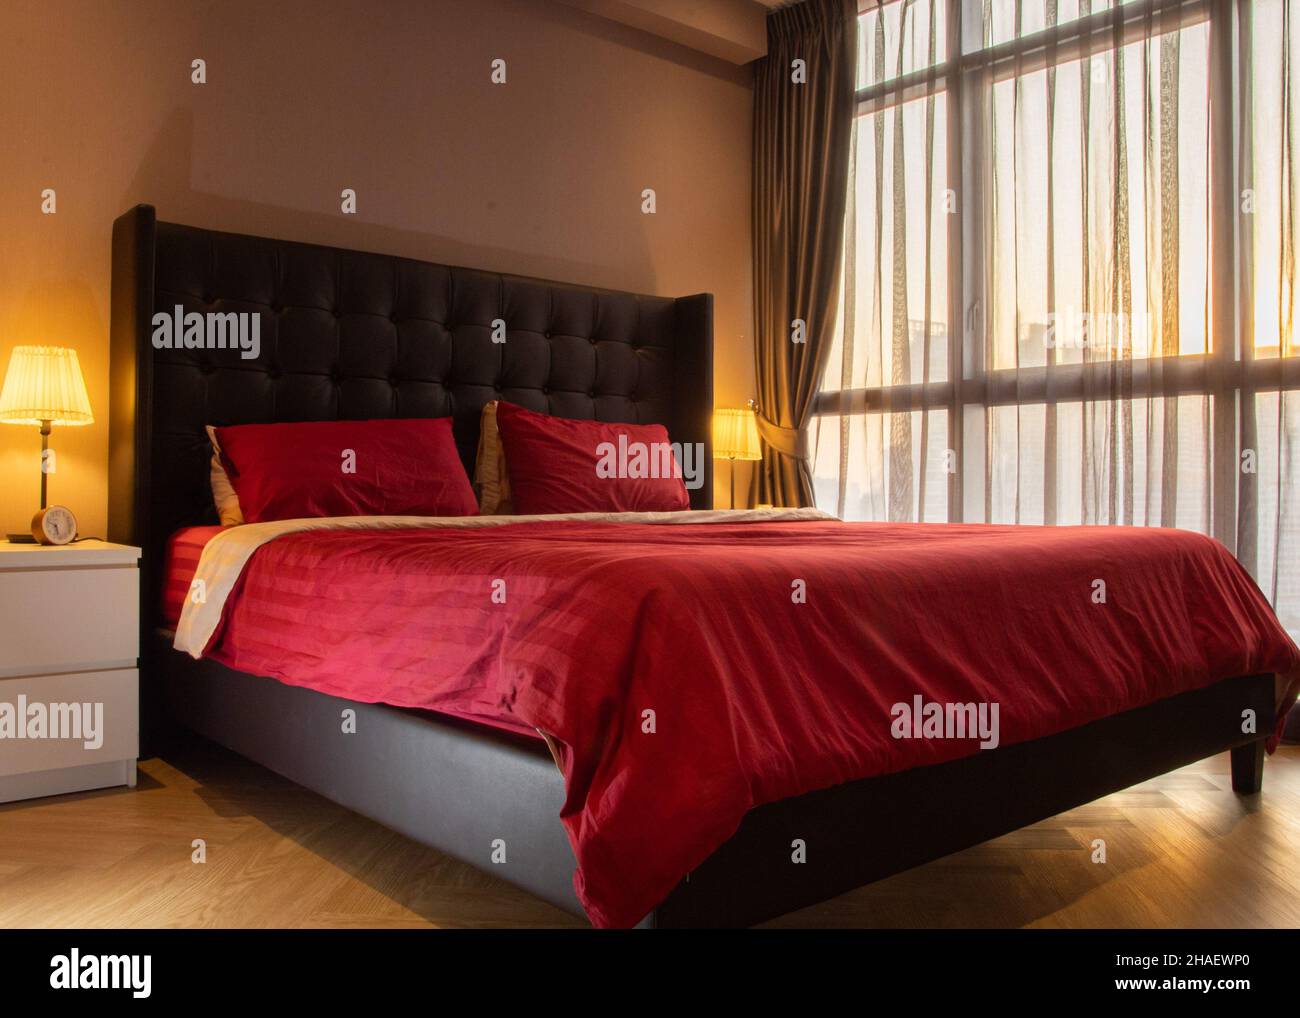 Eine Nahaufnahme eines schönen Schlafzimmers mit schöner roter Abdeckung auf dem Bett Stockfoto